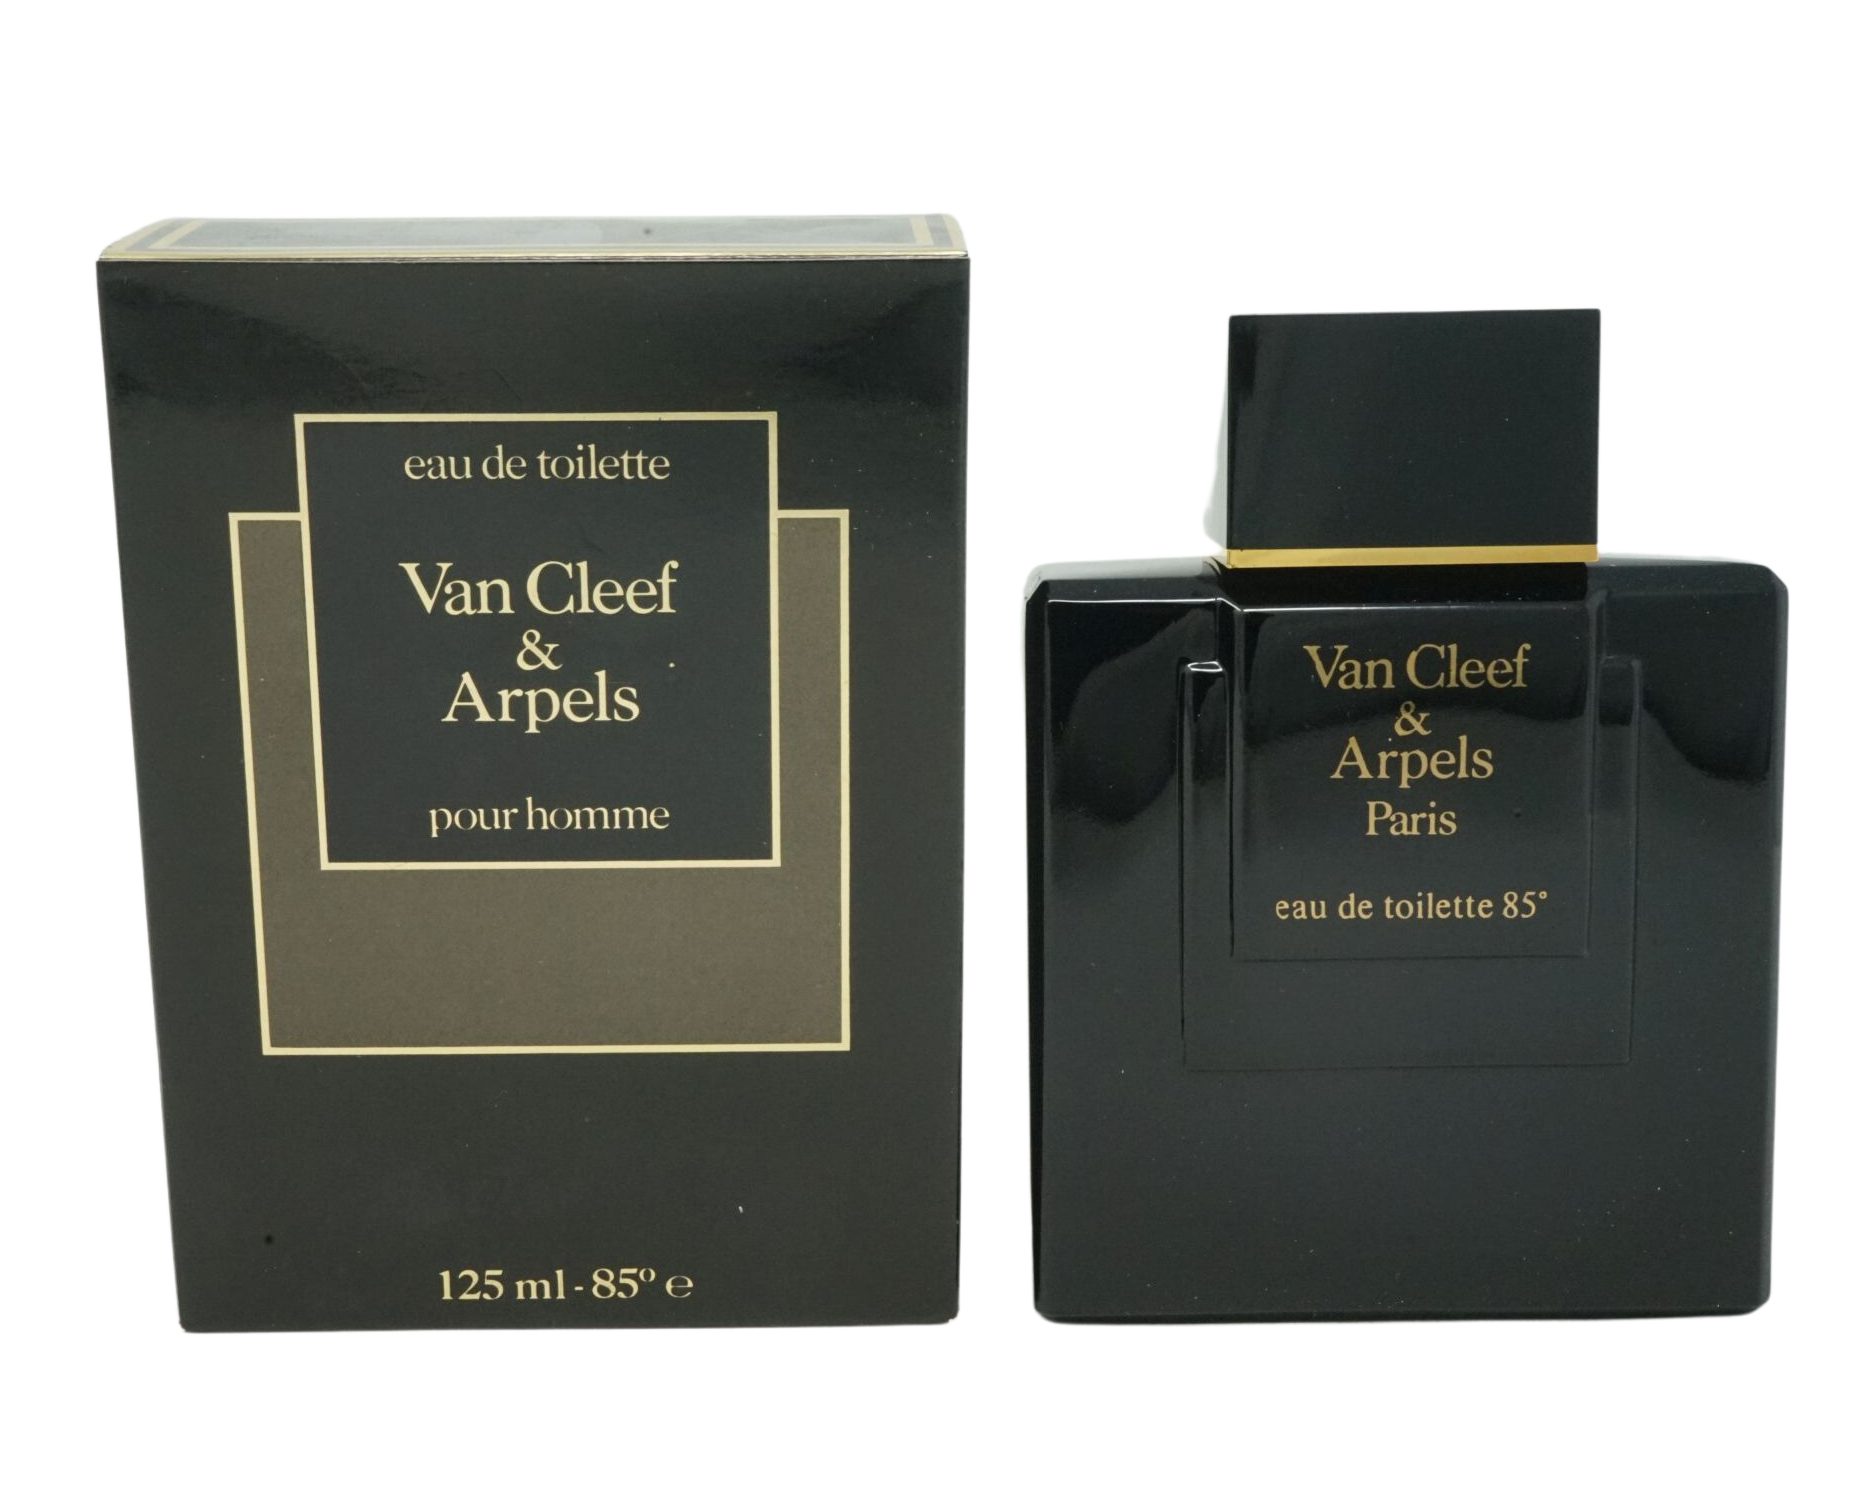 Van Cleef & Arpels Eau de Toilette Van Cleef & Arpels Pour Homme Eau de Toilette 125ml